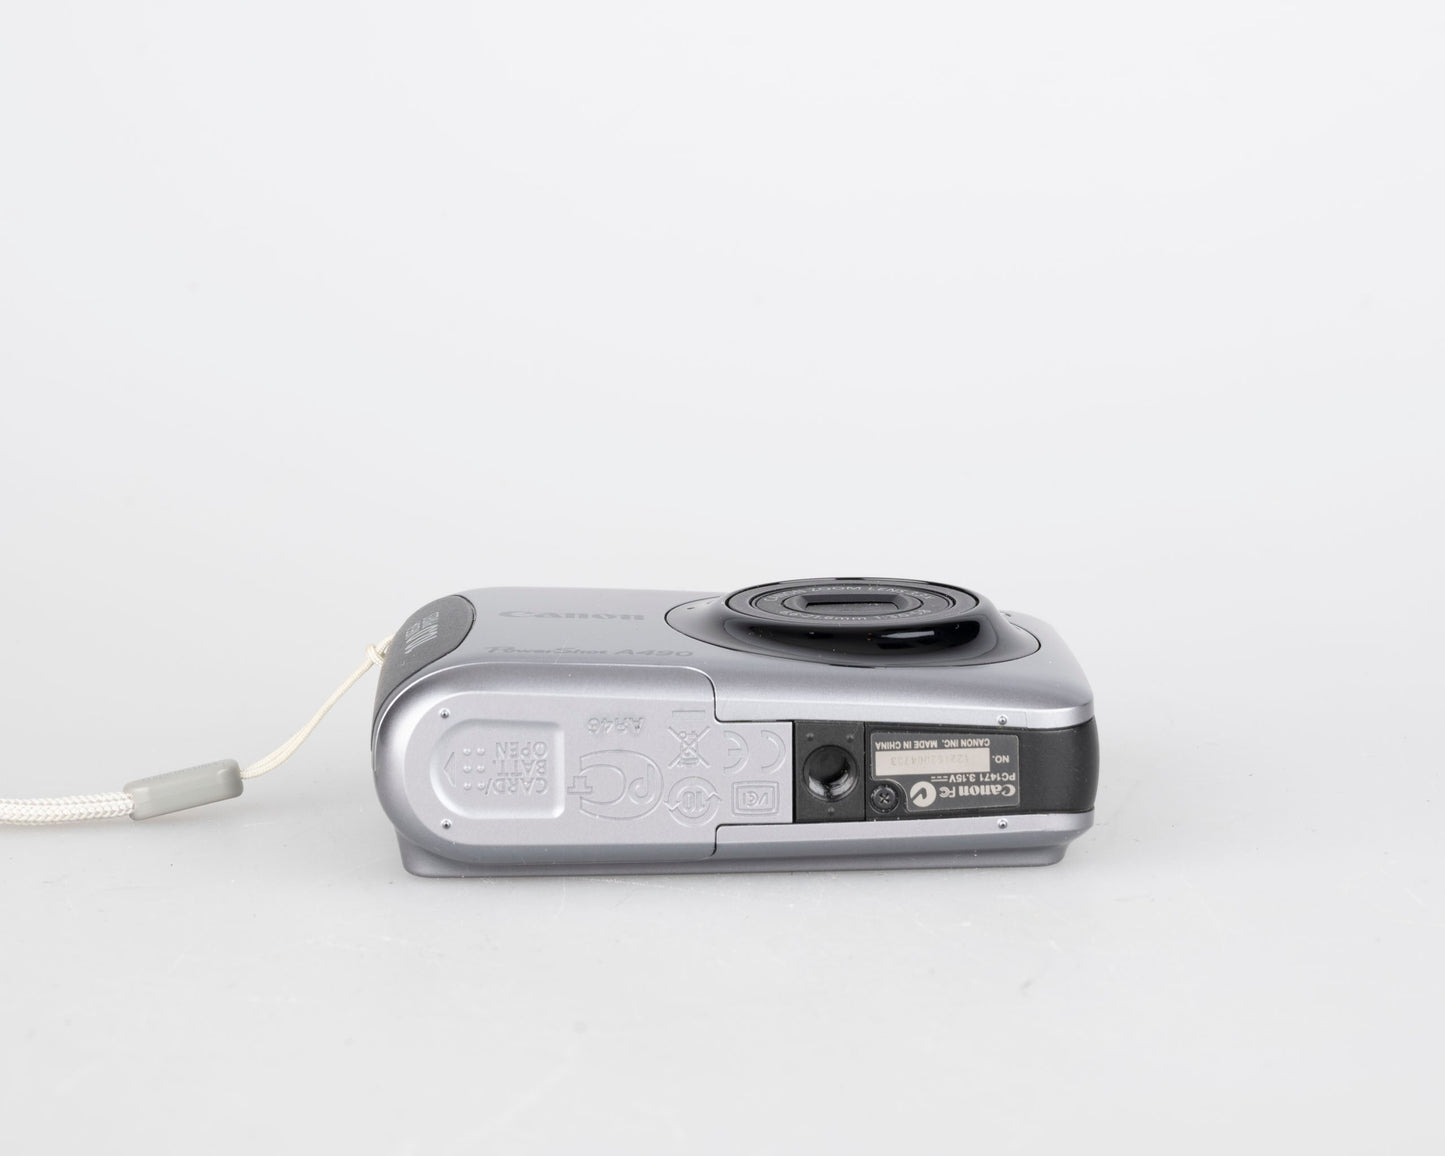 Appareil photo numérique Canon Powershot A490 Capteur CCD 10 MP avec boîte d'origine + manuels + carte SD de 2 Go (utilise des piles AA)